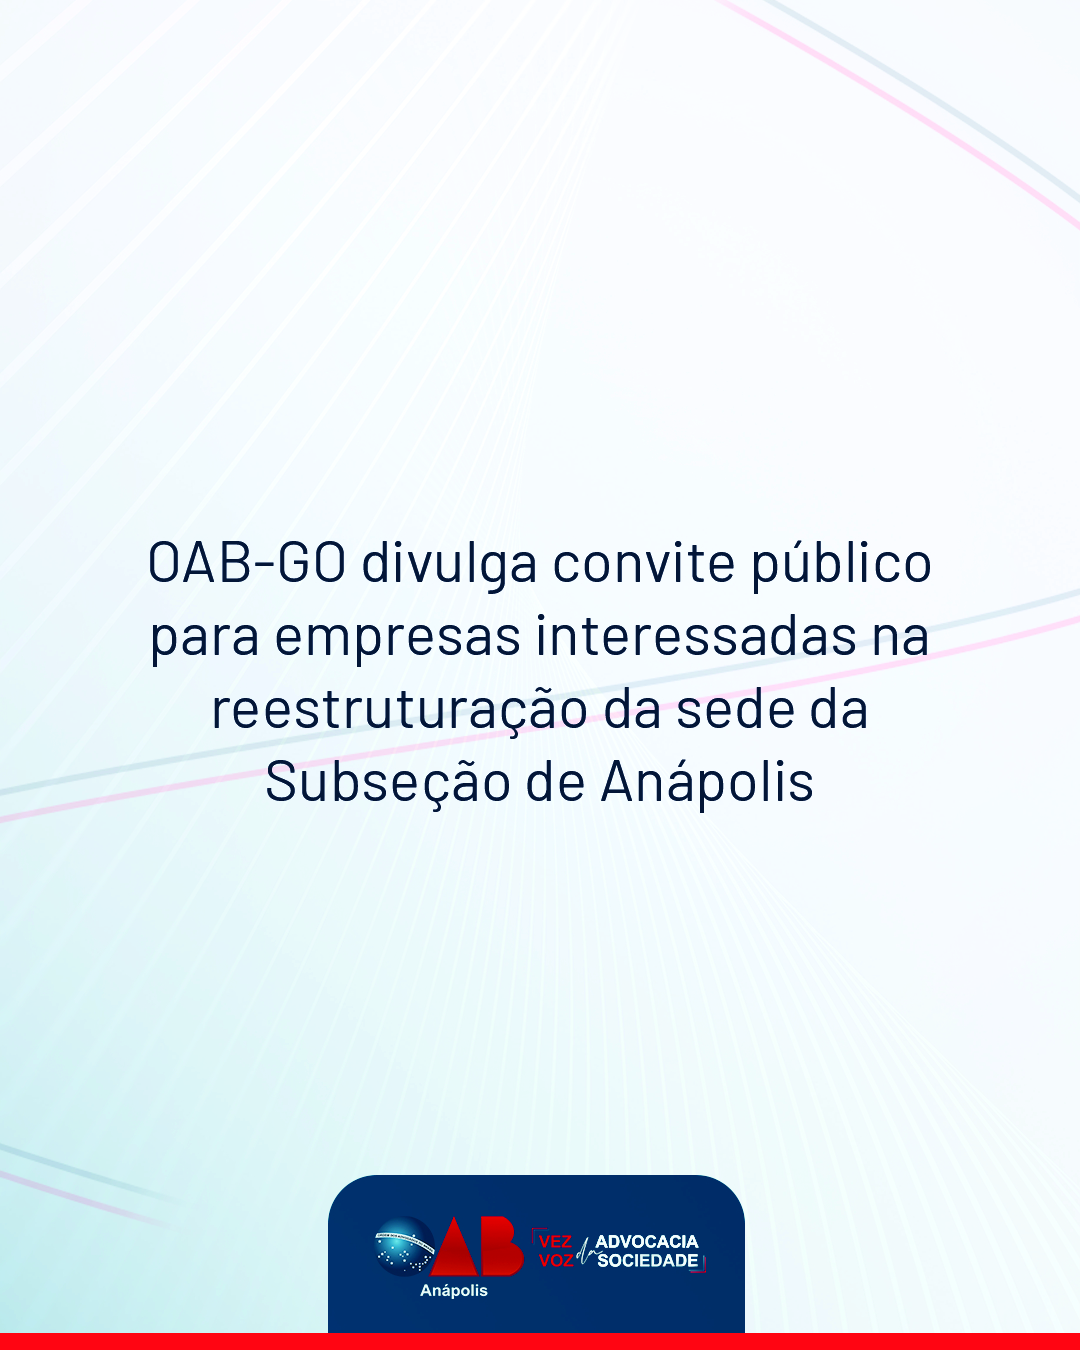 OAB-GO DIVULGA CONVITE PÚBLICO PARA EMPRESAS INTERESSADAS NA REESTRUTURAÇÃO DA SEDE DA SUBSEÇÃO DE ANÁPOLIS